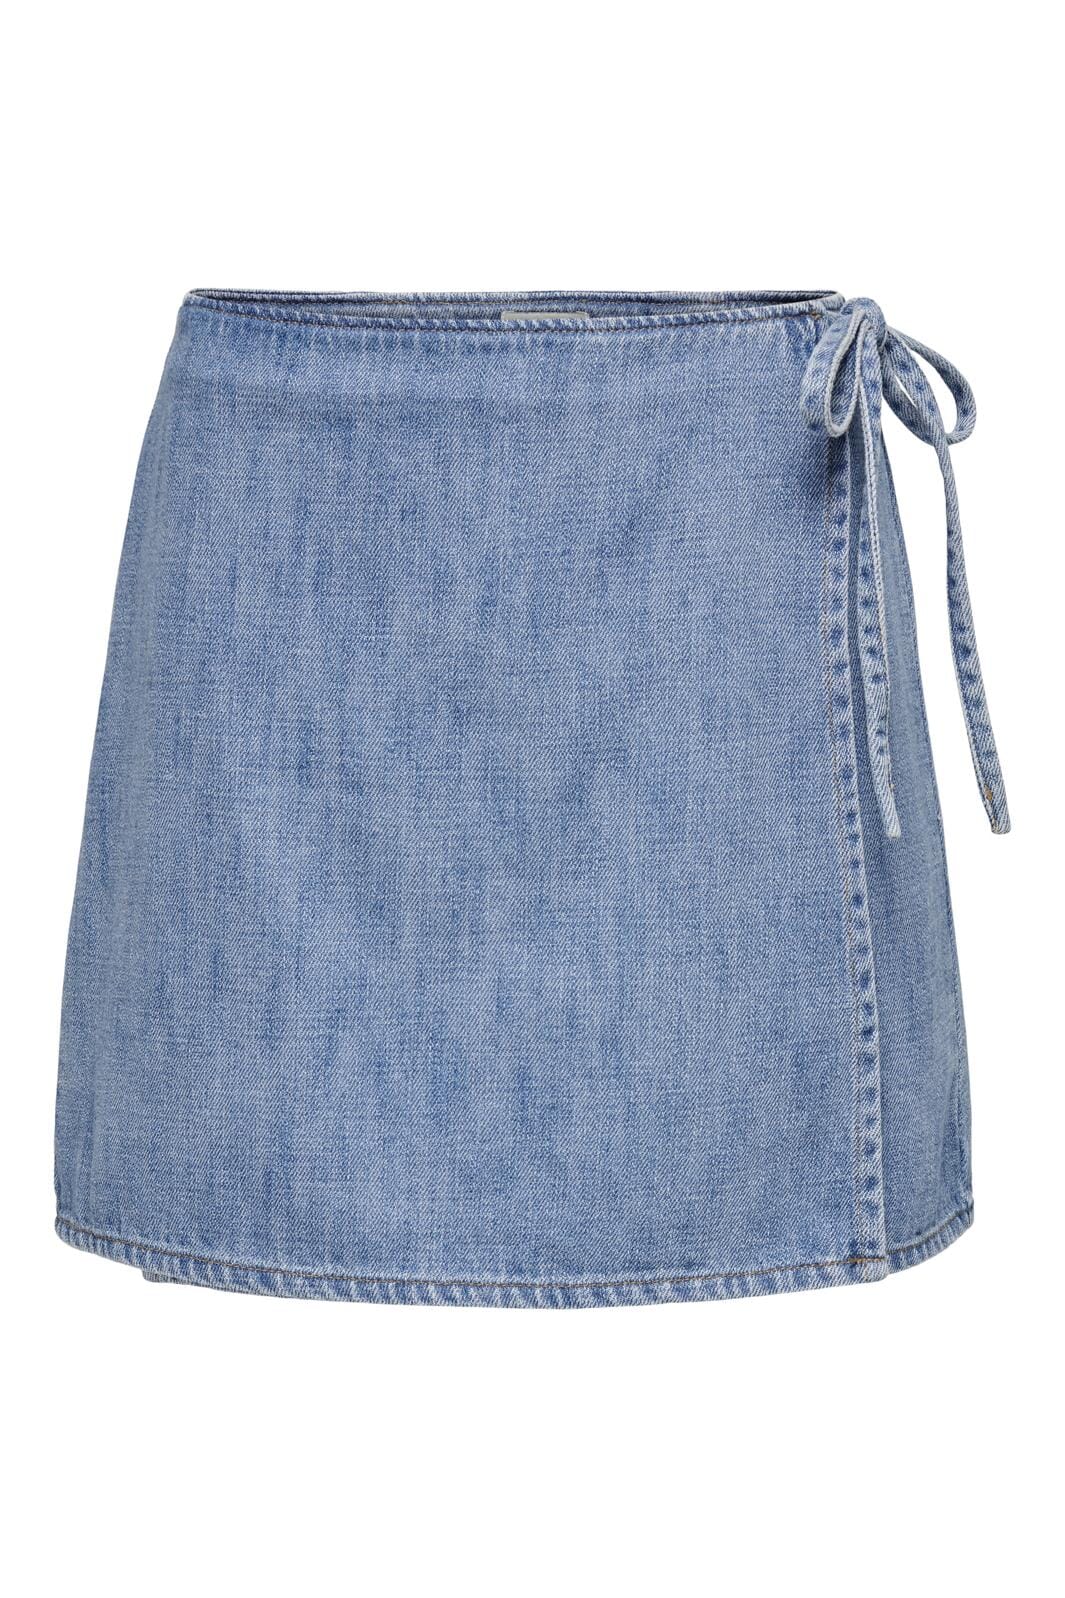 Only - Onlnoelle Wrap Skirt Yor - 4536874 Light Blue Denim